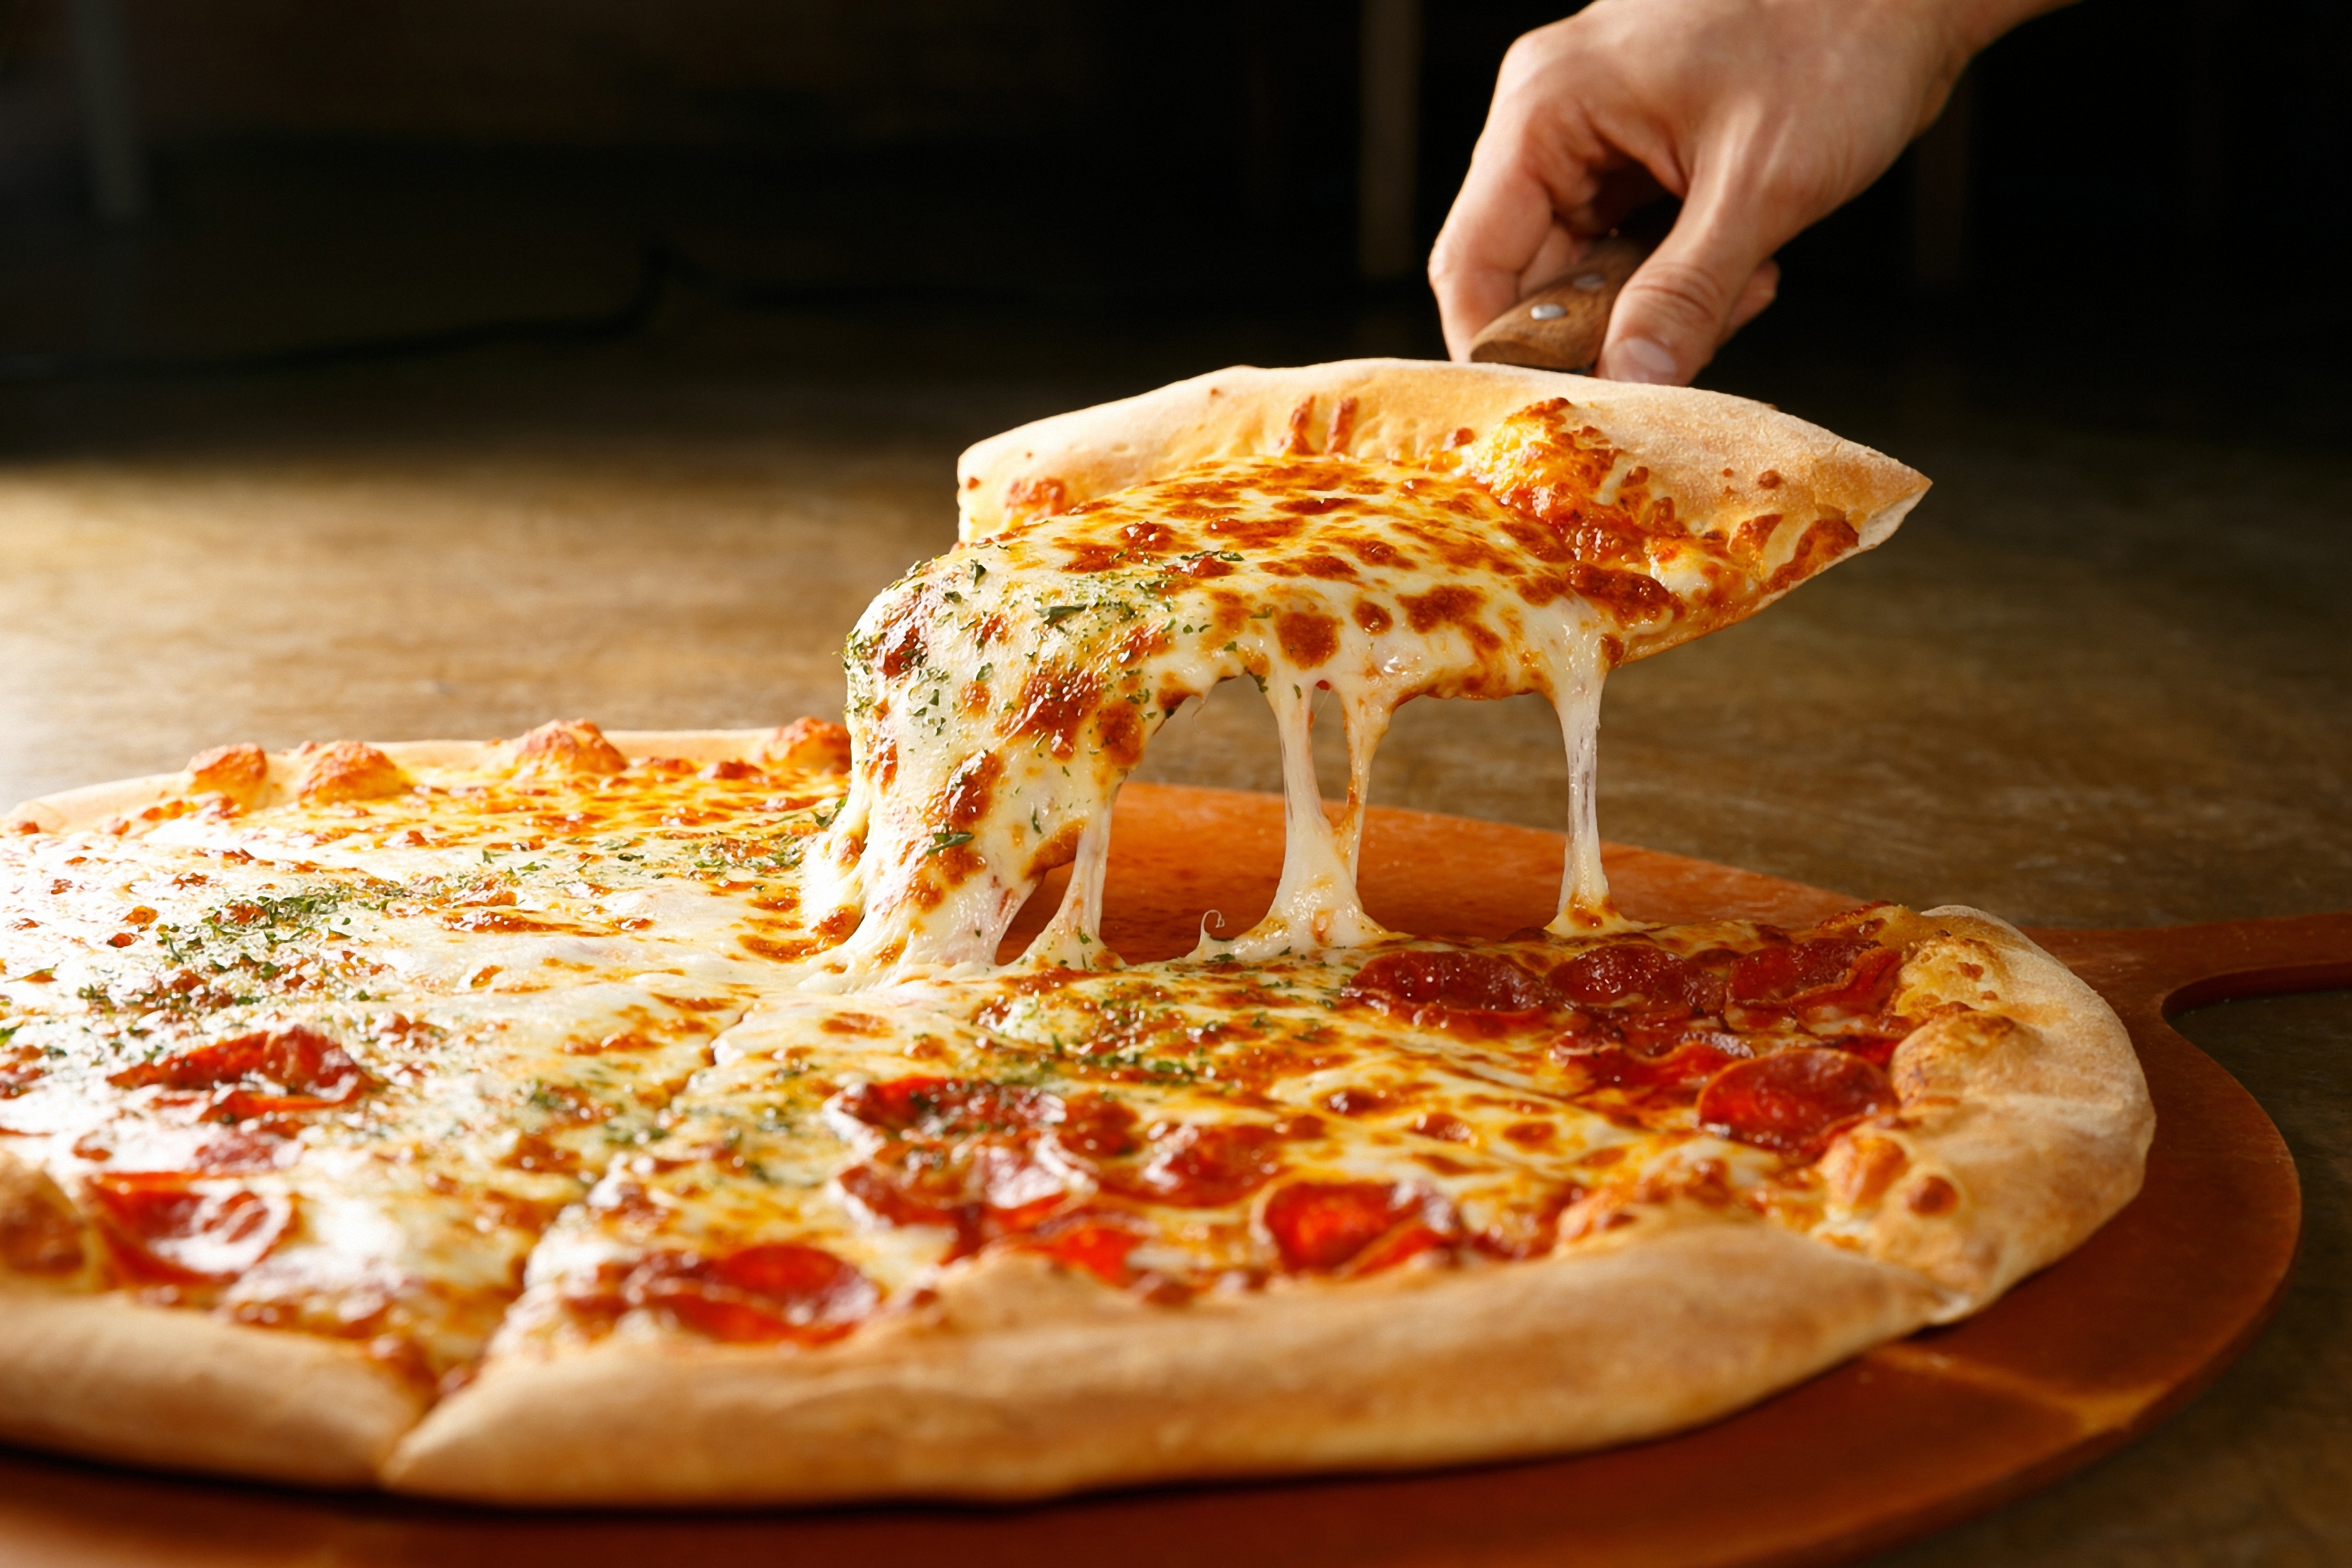 La pizza, otra de las comidas que los argentinos adoptaron de la cocina italiana (Shutterstock)